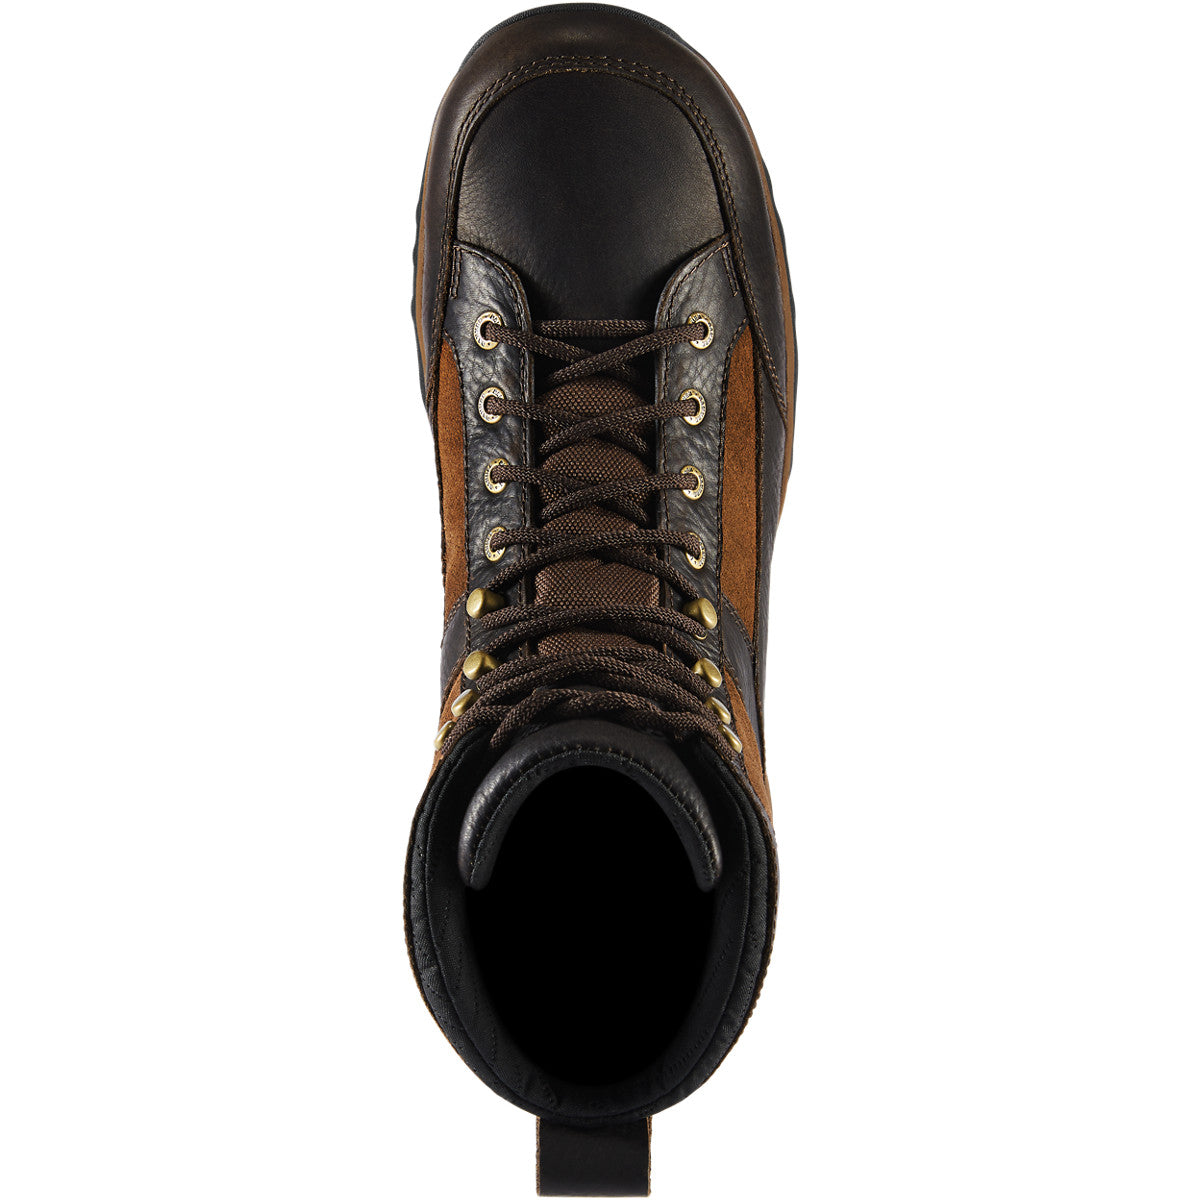 Danner Men's Recurve 7" WP 400G Thinsulate Hunt Boot - Brown - 47612  - Overlook Boots